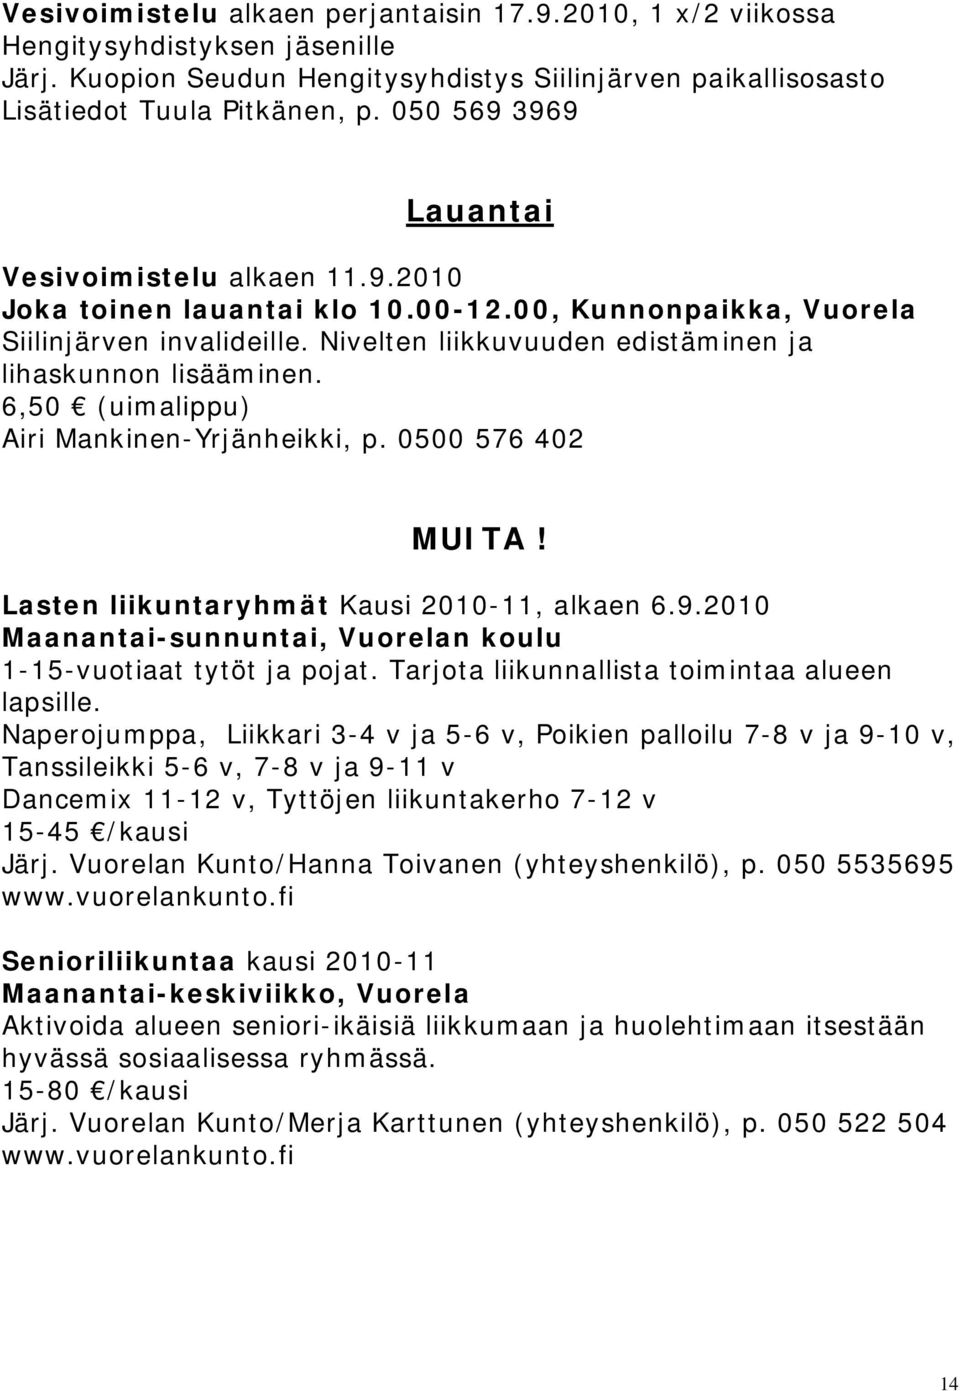 Nivelten liikkuvuuden edistäminen ja lihaskunnon lisääminen. 6,50 (uimalippu) Airi Mankinen-Yrjänheikki, p. 0500 576 402 MUITA! Lasten liikuntaryhmät Kausi 2010-11, alkaen 6.9.